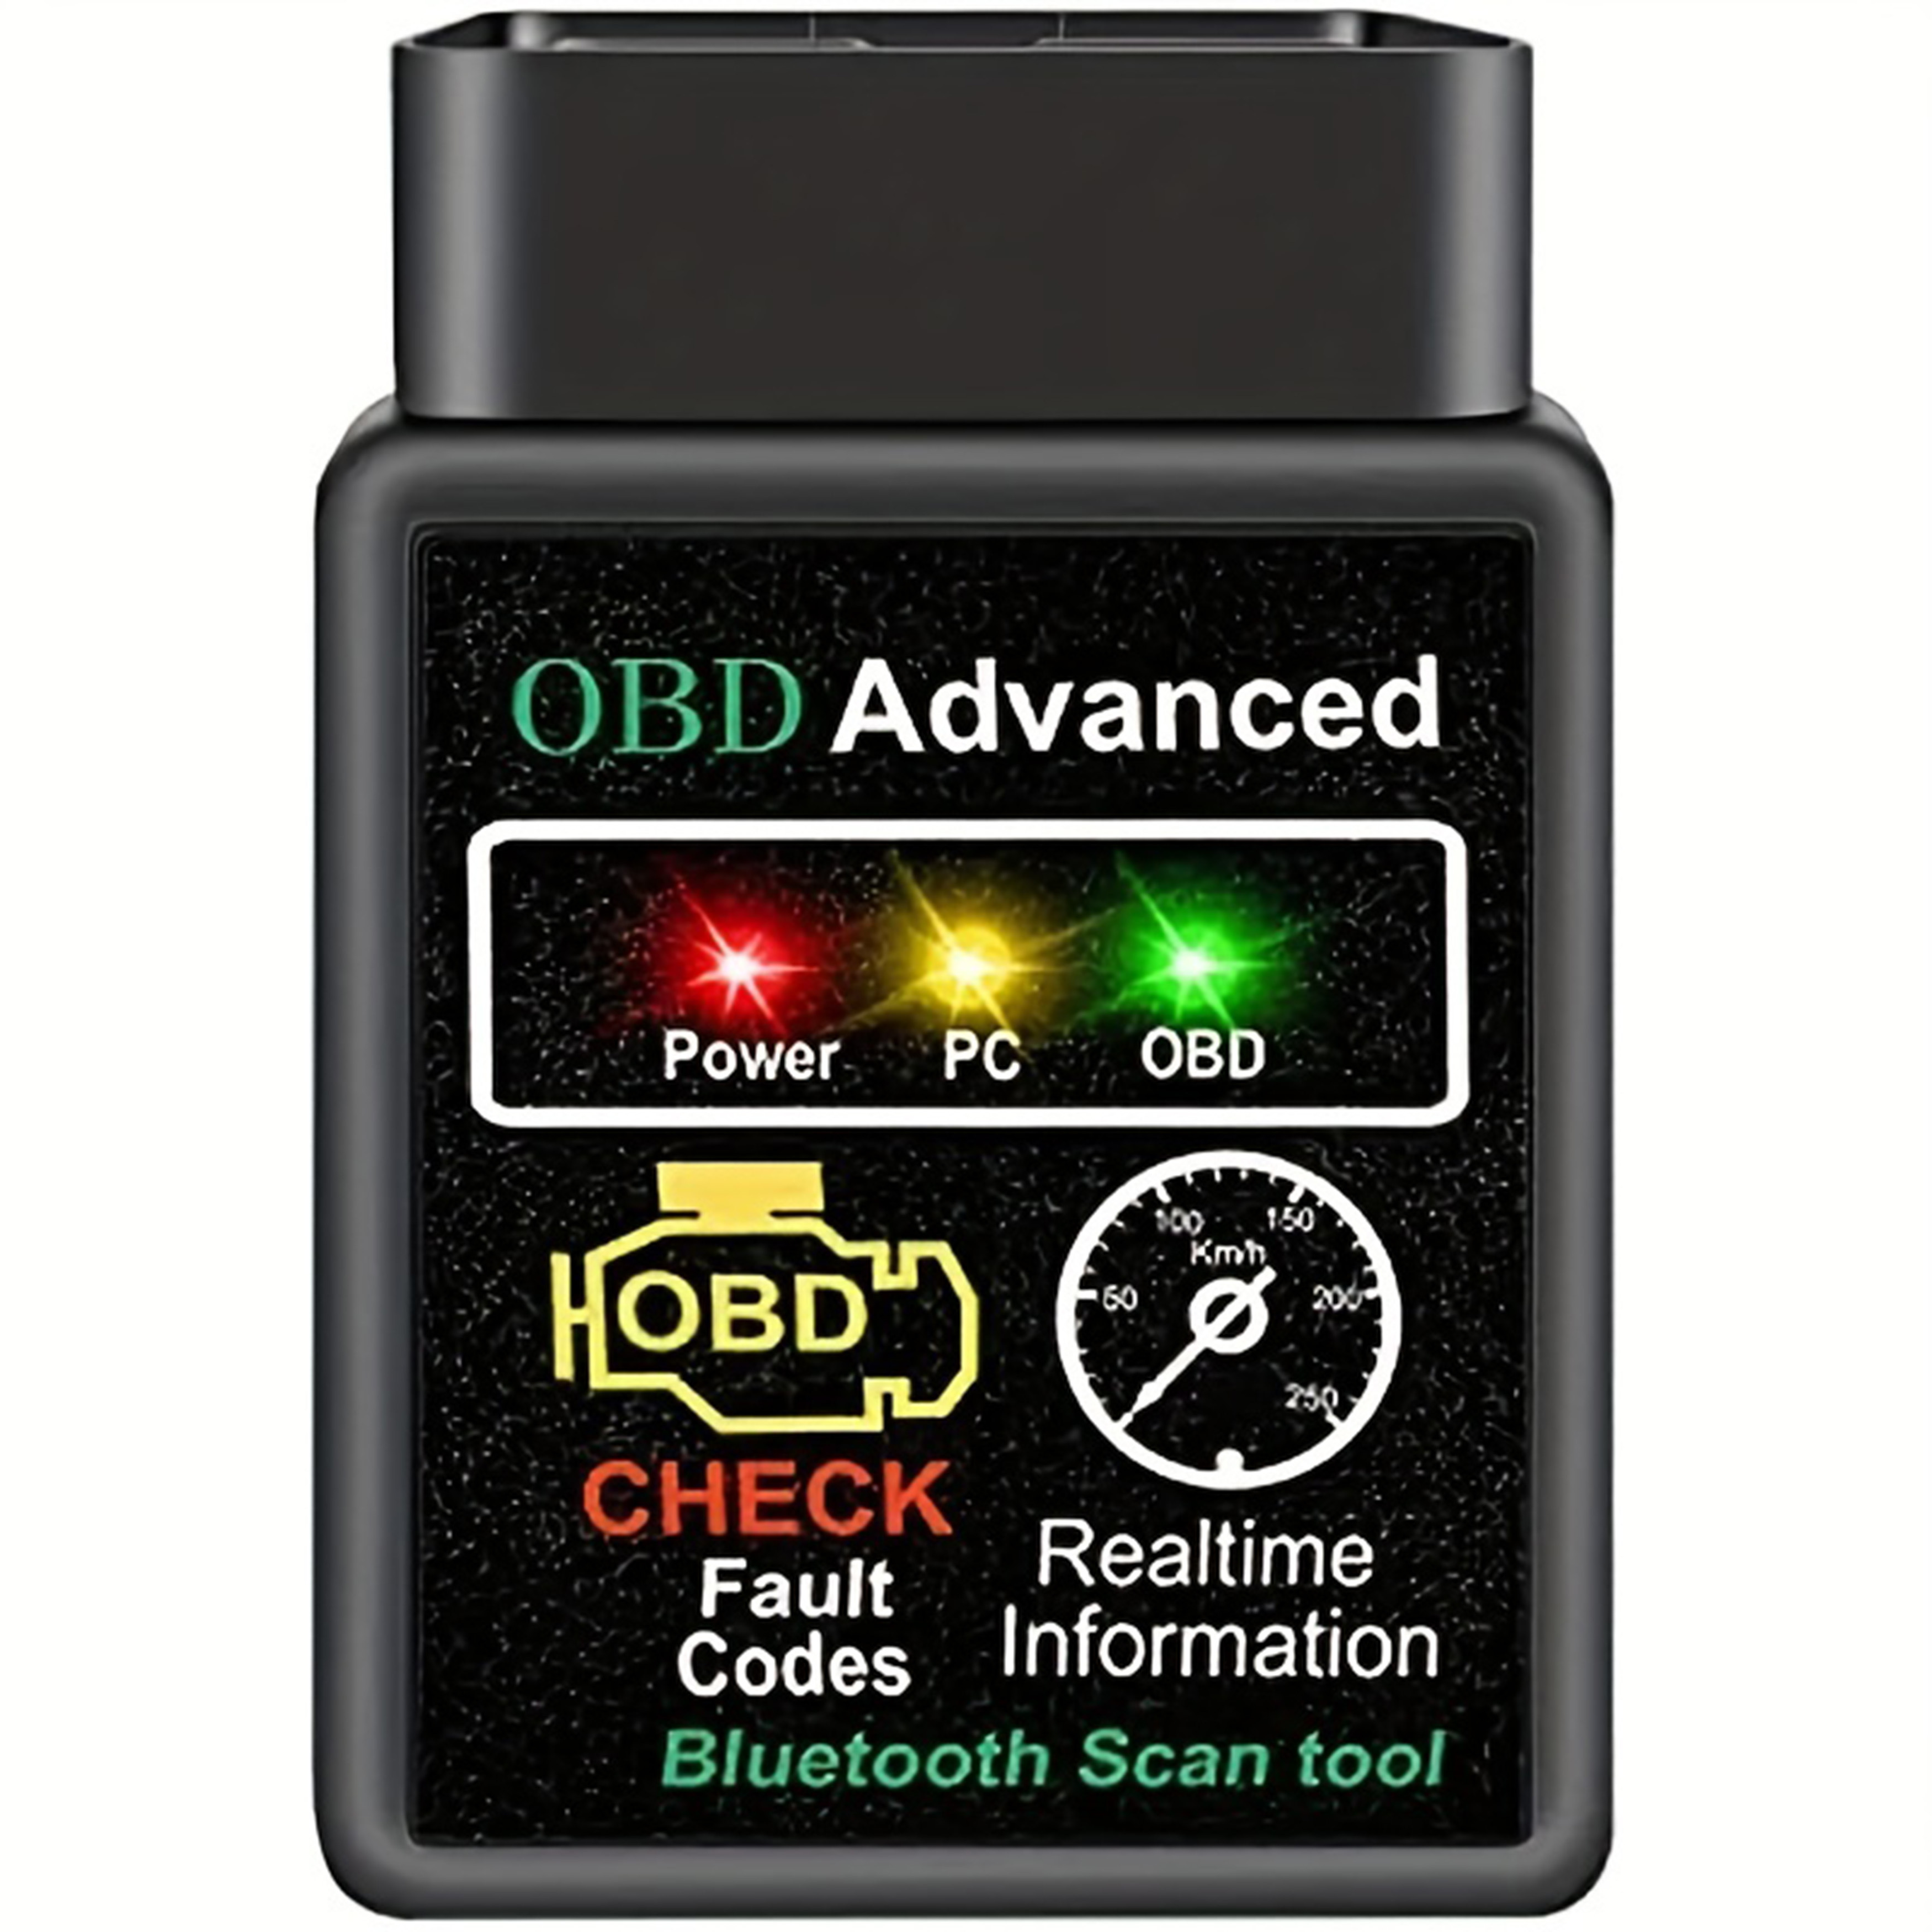 ELM327 HH Android Bluetooth OBD 2 OBD II Diagnostic Scan Tool